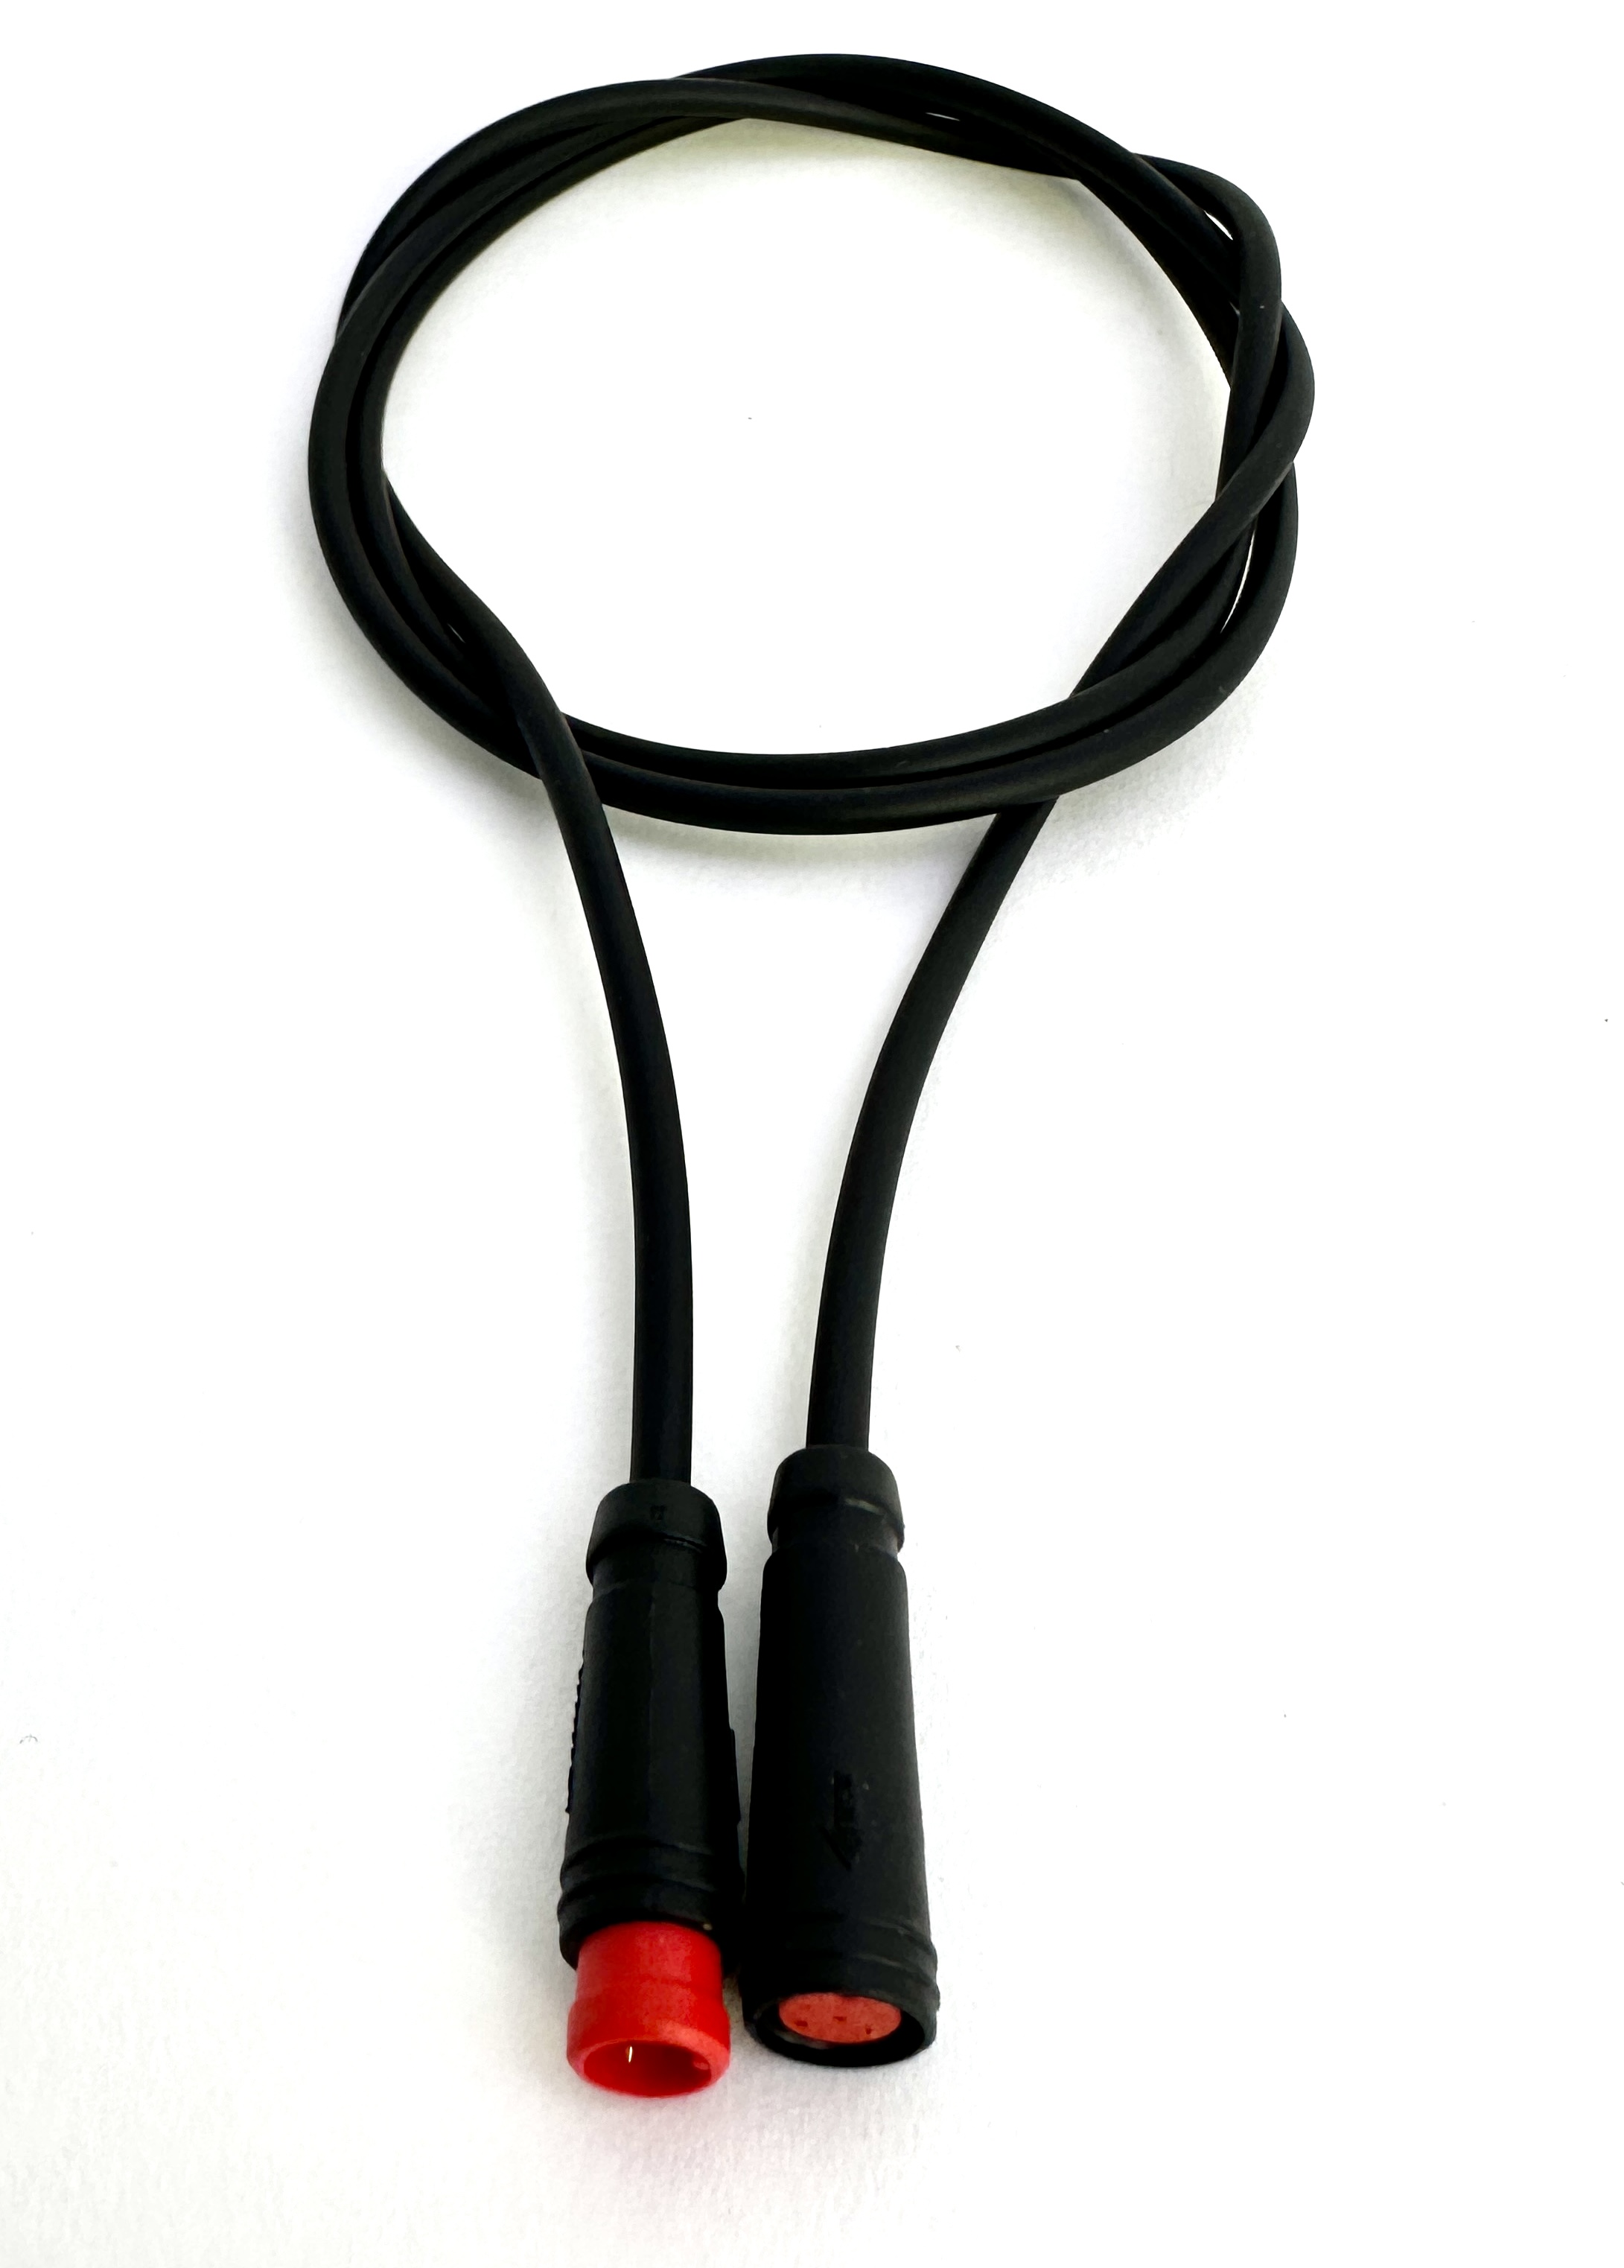 HIGO / Julet Câble d'extension 50 cm pour Ebike, 2 PIN femelle à mâle, rouge